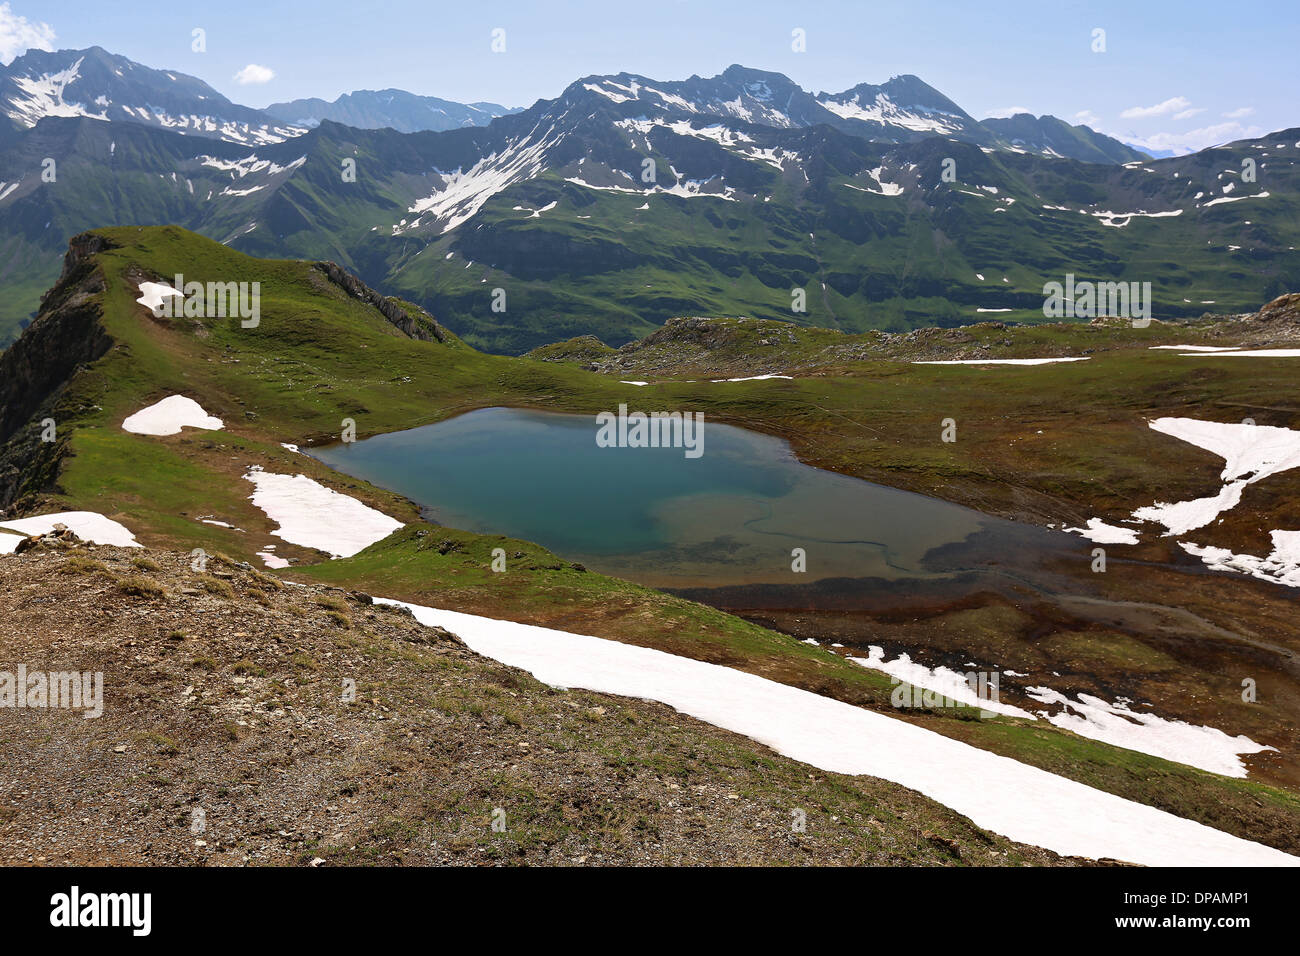 Lac de Mya. Paesaggio alpino, lago di riflessione; Vallée des Glaciers. Il Mont Blanc massiccio montuoso. Sulle Alpi francesi. Foto Stock